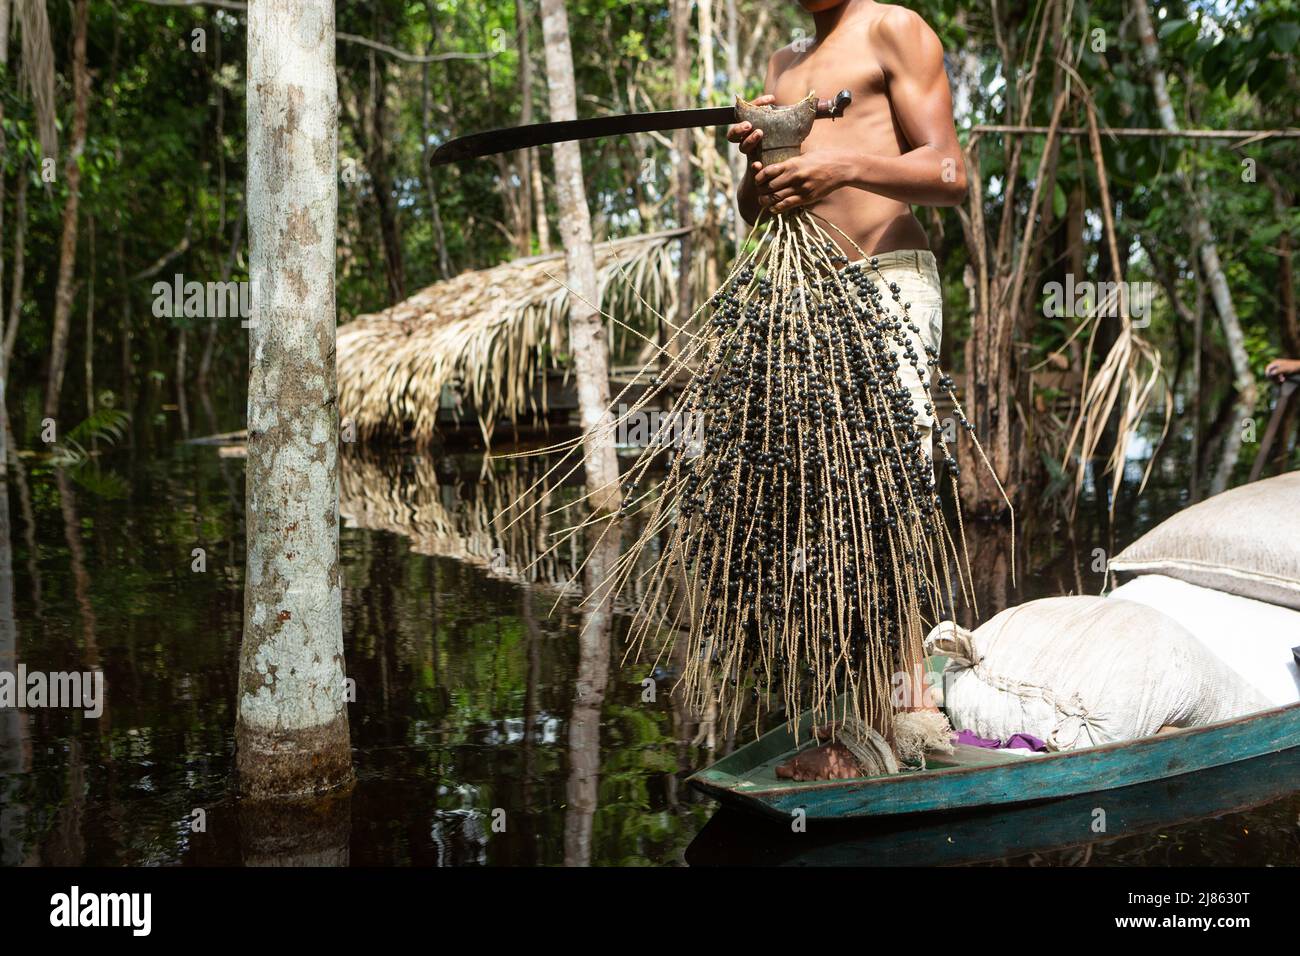 Mann hält ein paar frische acai-Frucht in amazonas Regenwald im Sommer sonnigen Tag. Konzept von Umwelt, Ökologie, Nachhaltigkeit, Biodiversität. Stockfoto